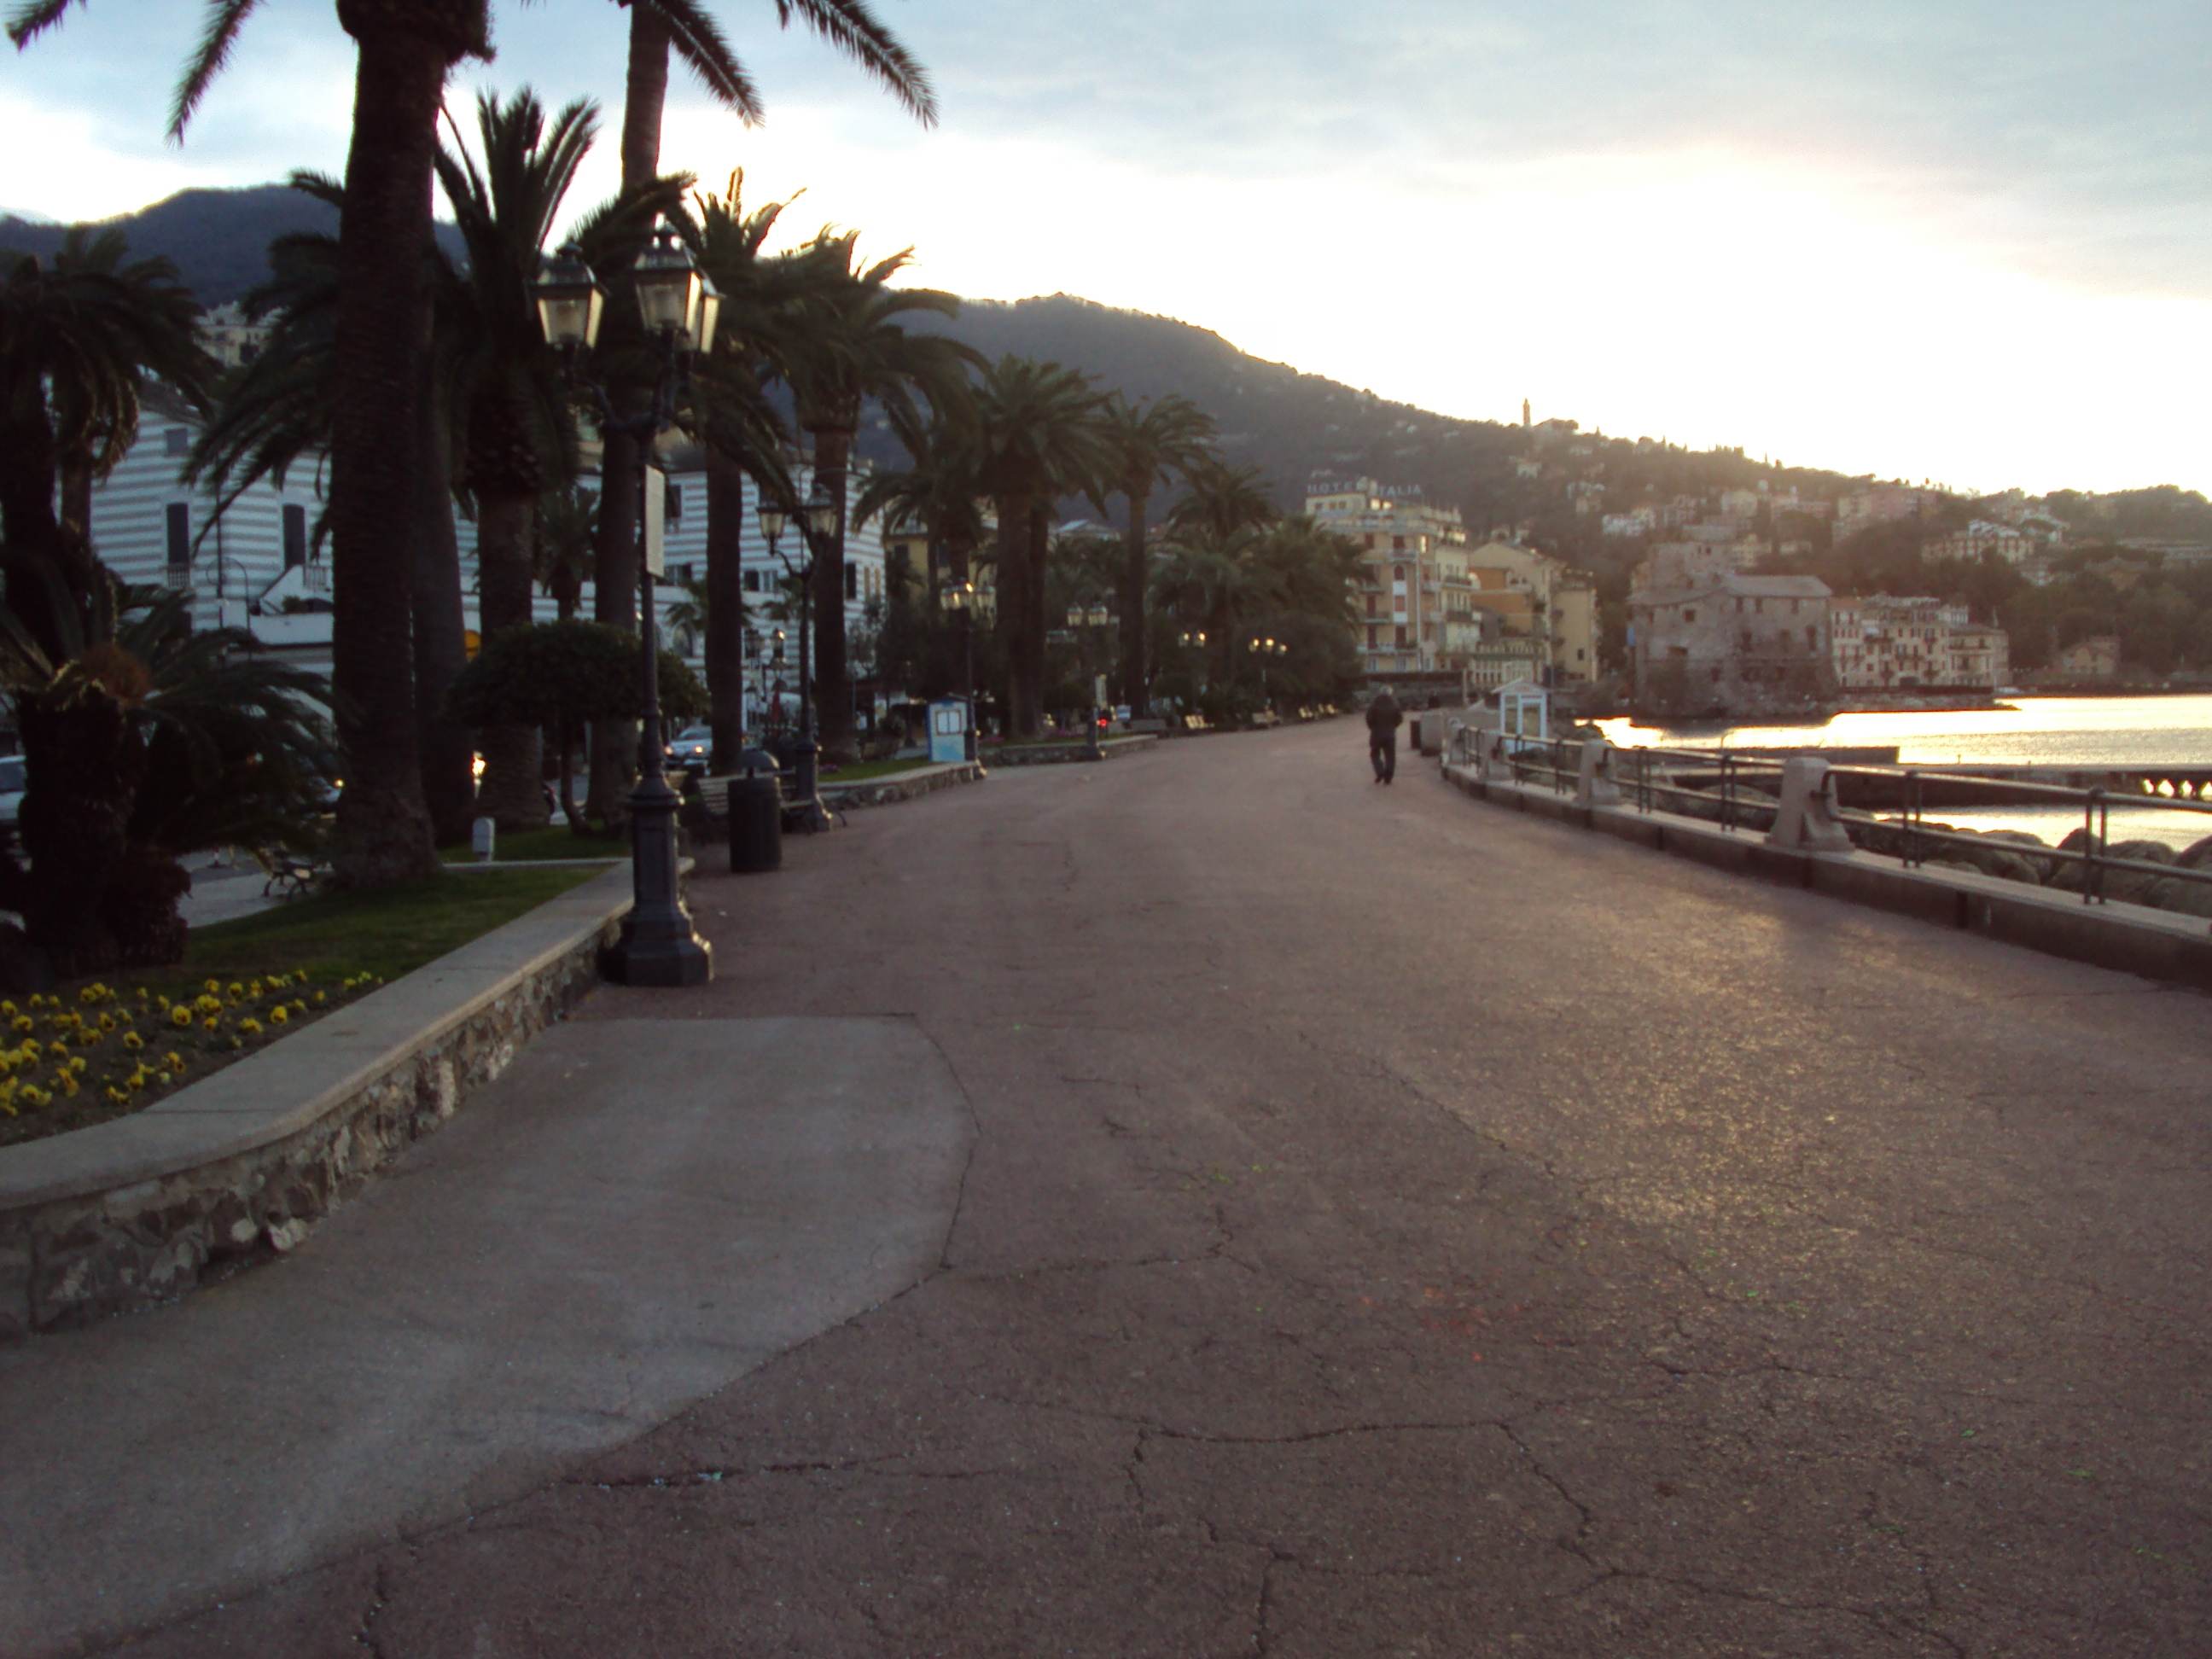 Tamponamento tra auto di lusso sul lungomare di Rapallo